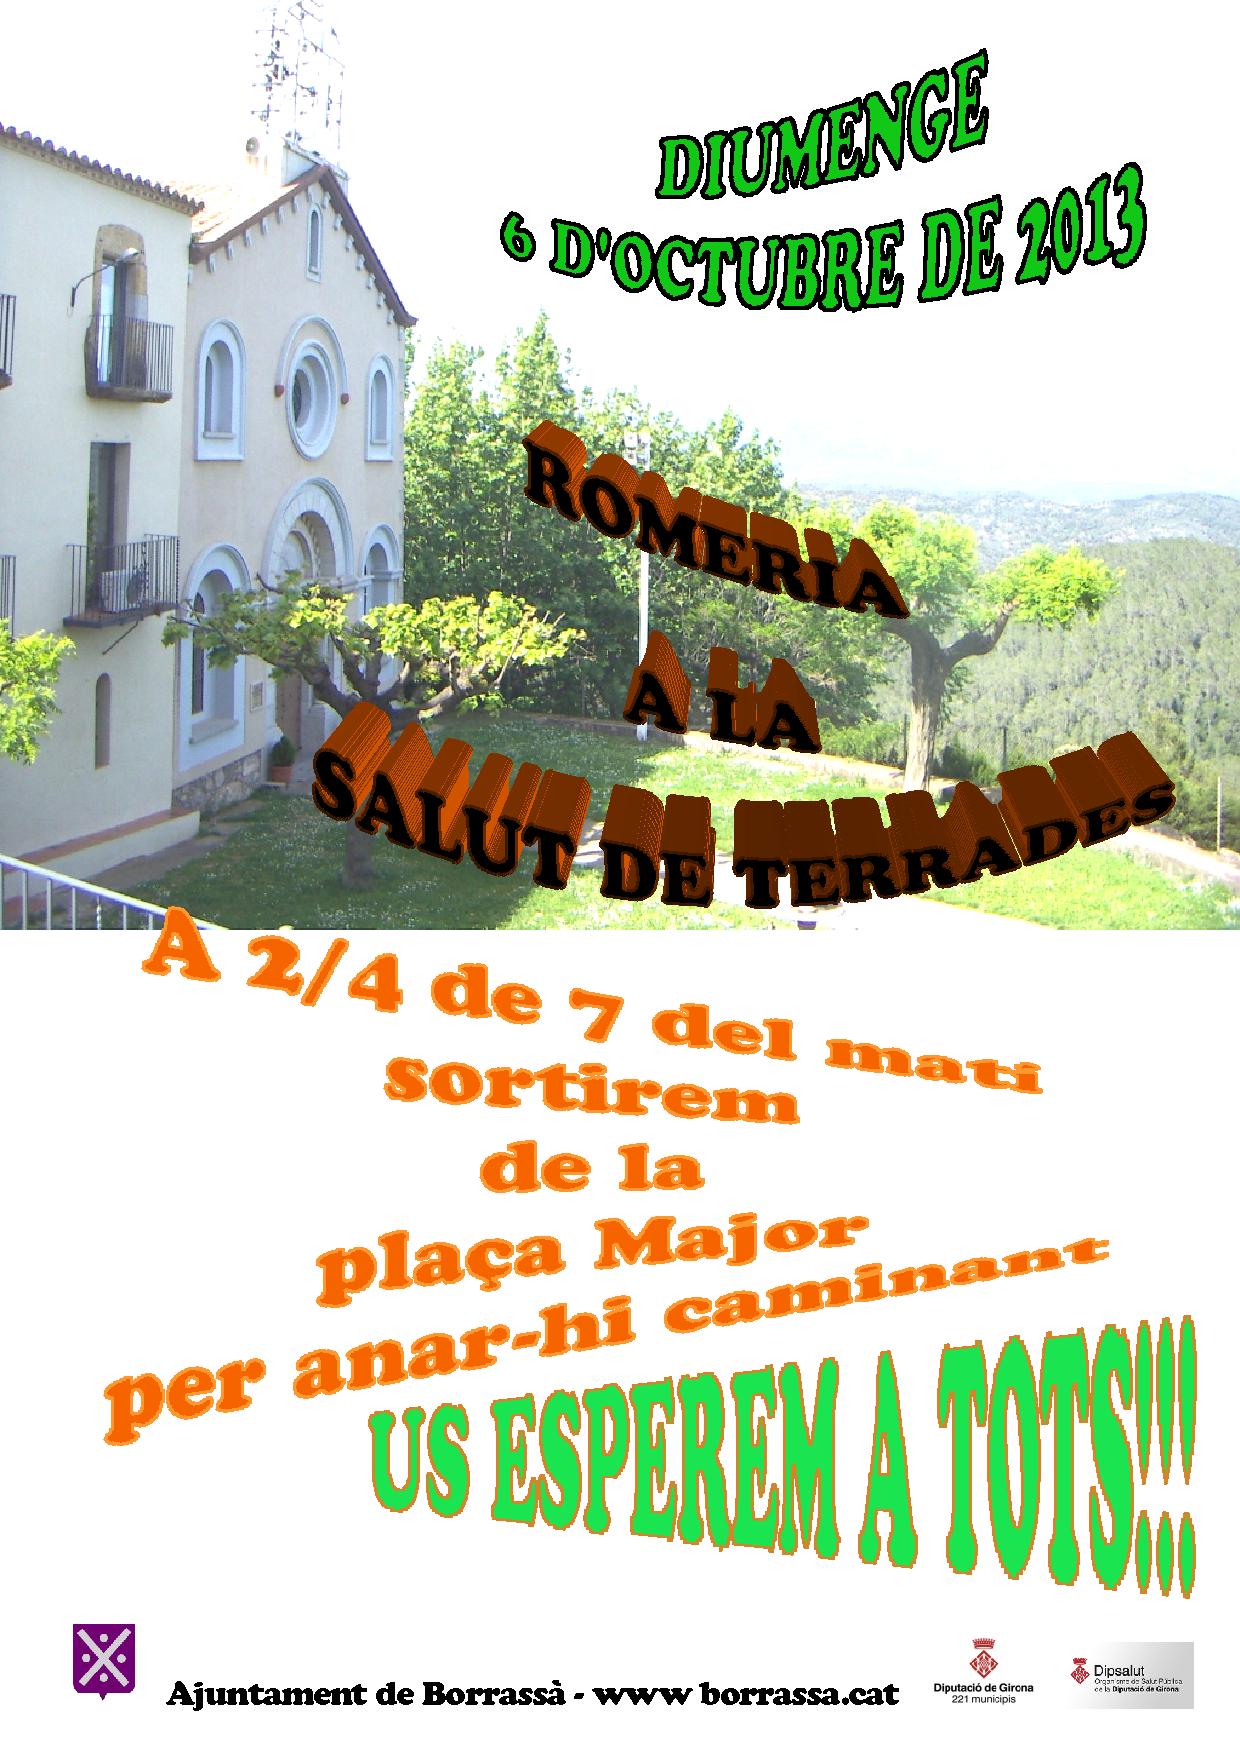 El diumenge 6 d'octubre, Borrassà seguirà la tradicional Romeria a la Salut de Terrades. Per anar-hi a peu se sortirà de la plaça Major a 2/4 de 7 del matí.